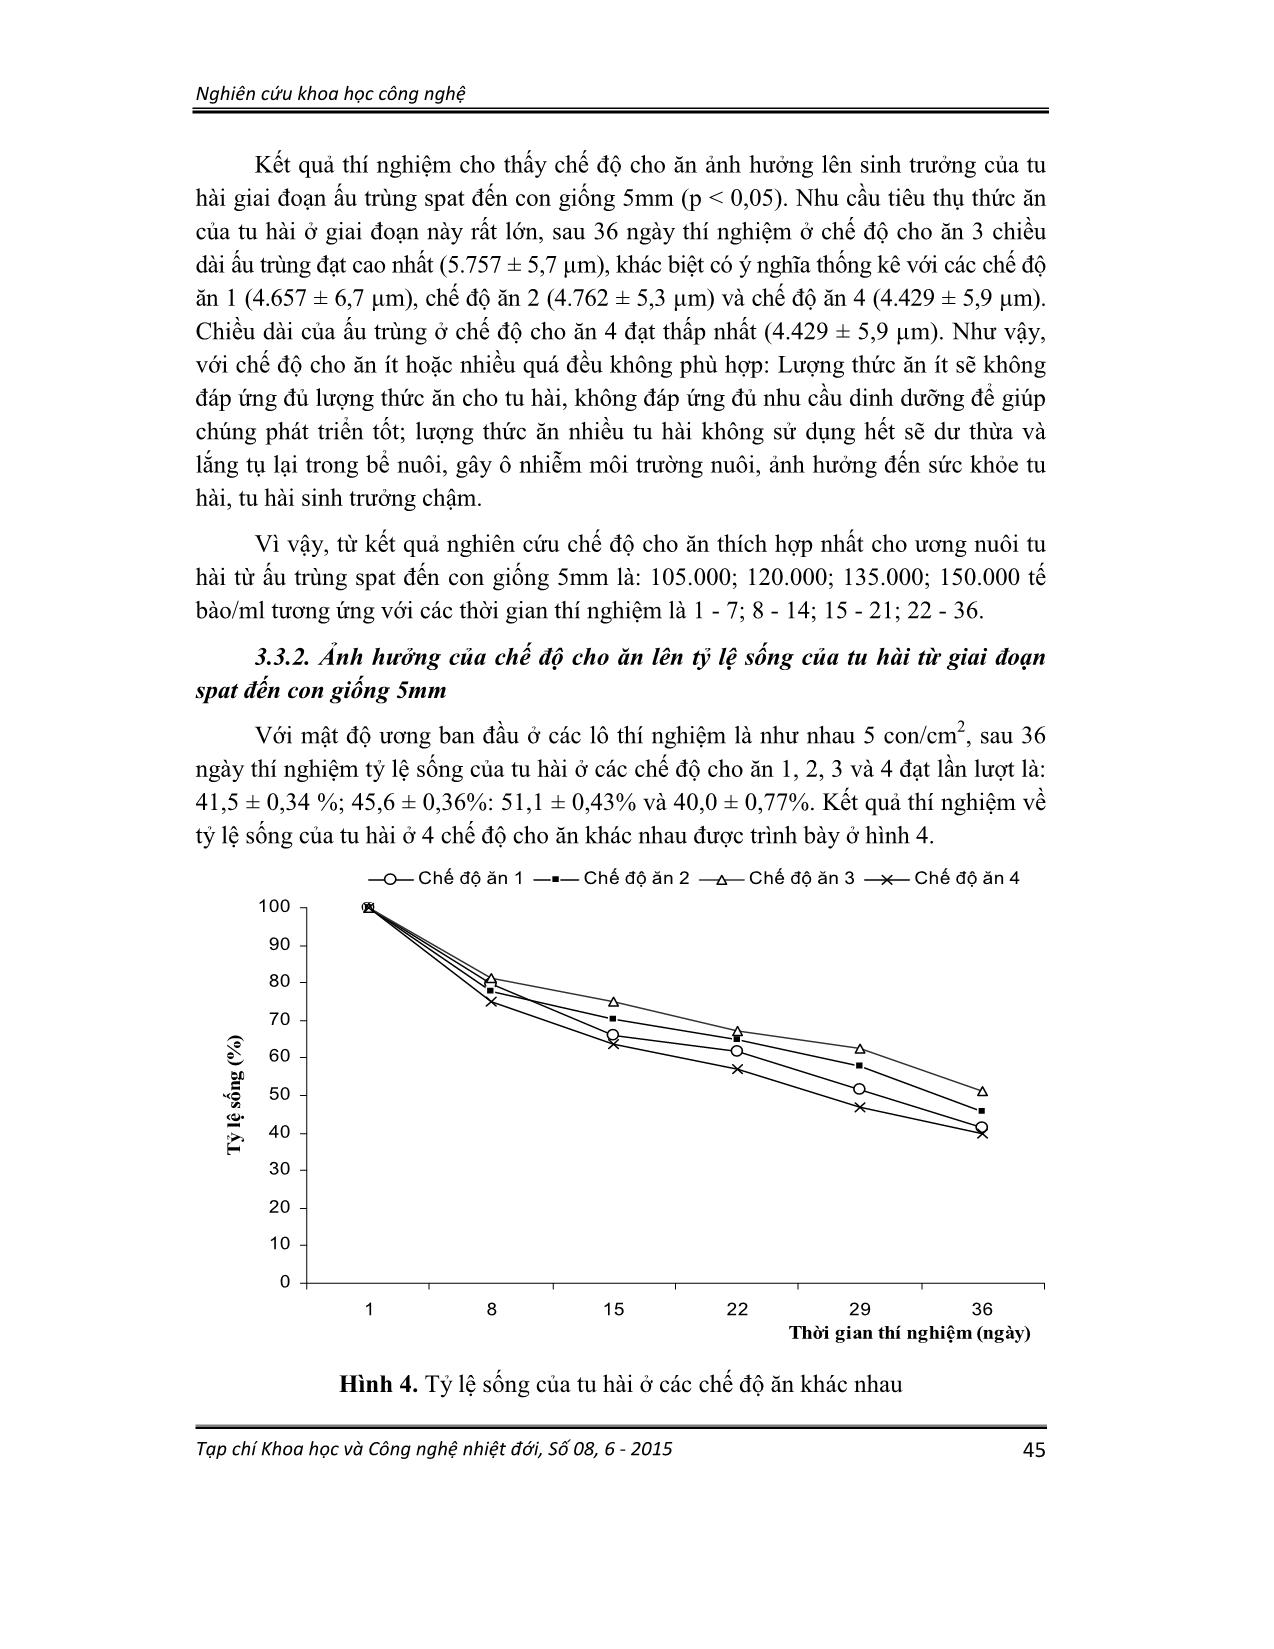 Ảnh hưởng của thức ăn, chế độ cho ăn lên sinh trưởng và tỷ lệ sống của tu hài (lutraria rhynchaena jonas, 1844) giai đoạn xuống đáy đến kích cỡ 5mm trang 8